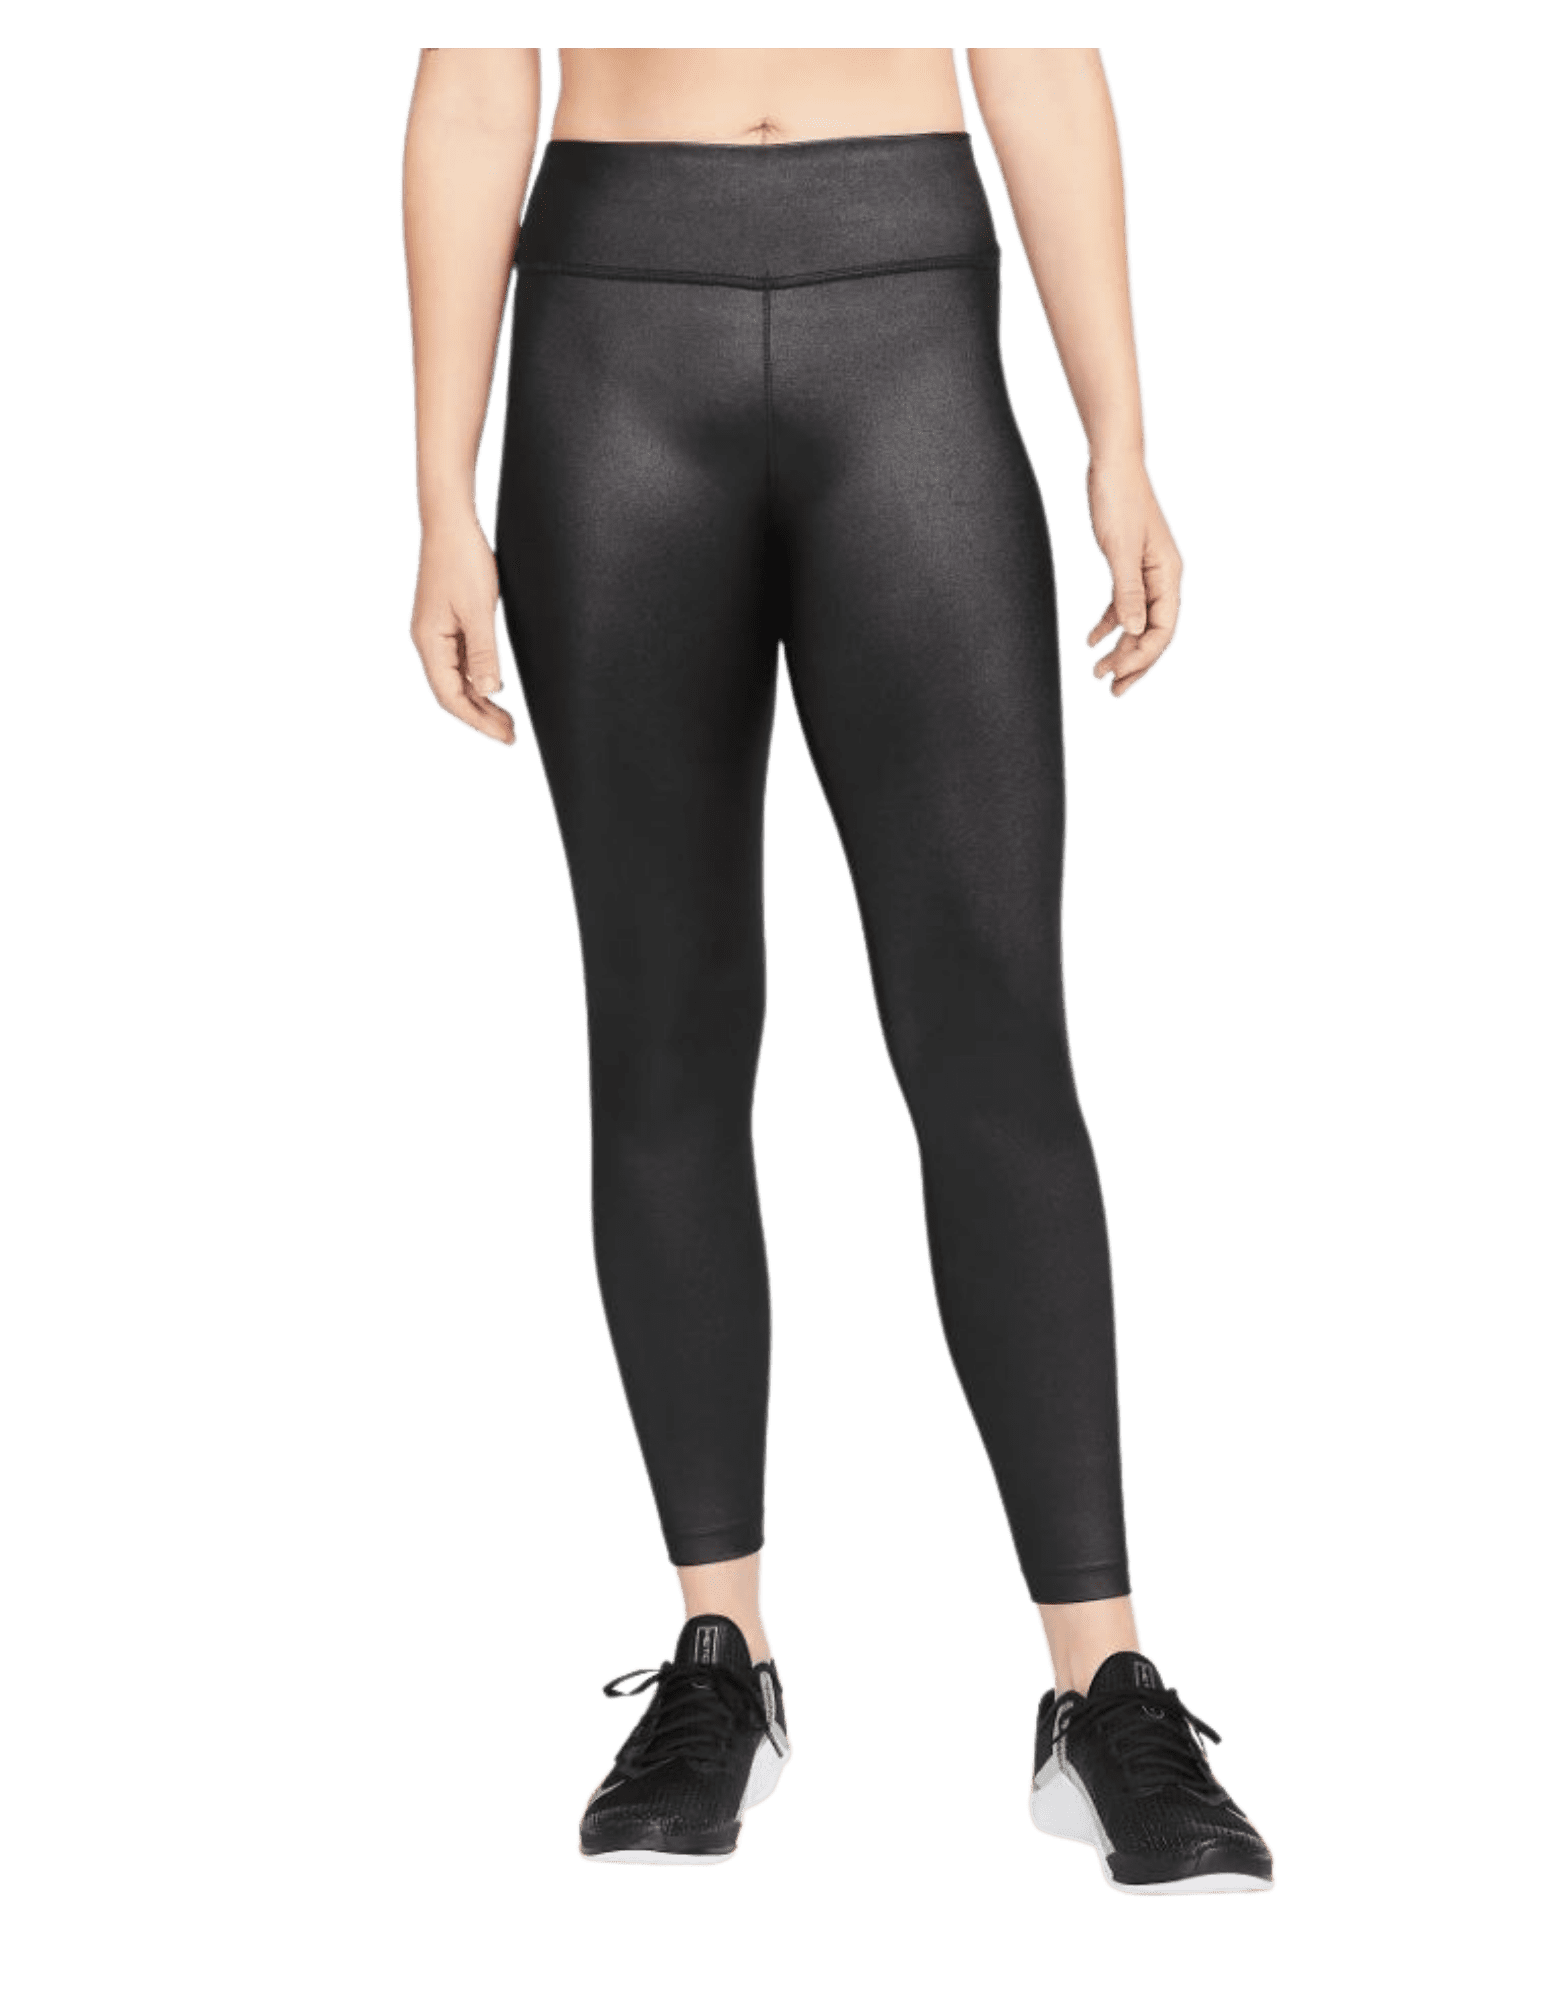 Nike Women's Dri-Fit One Mid-Rise Shine Legging Pants (Black/White,  XX-Small)